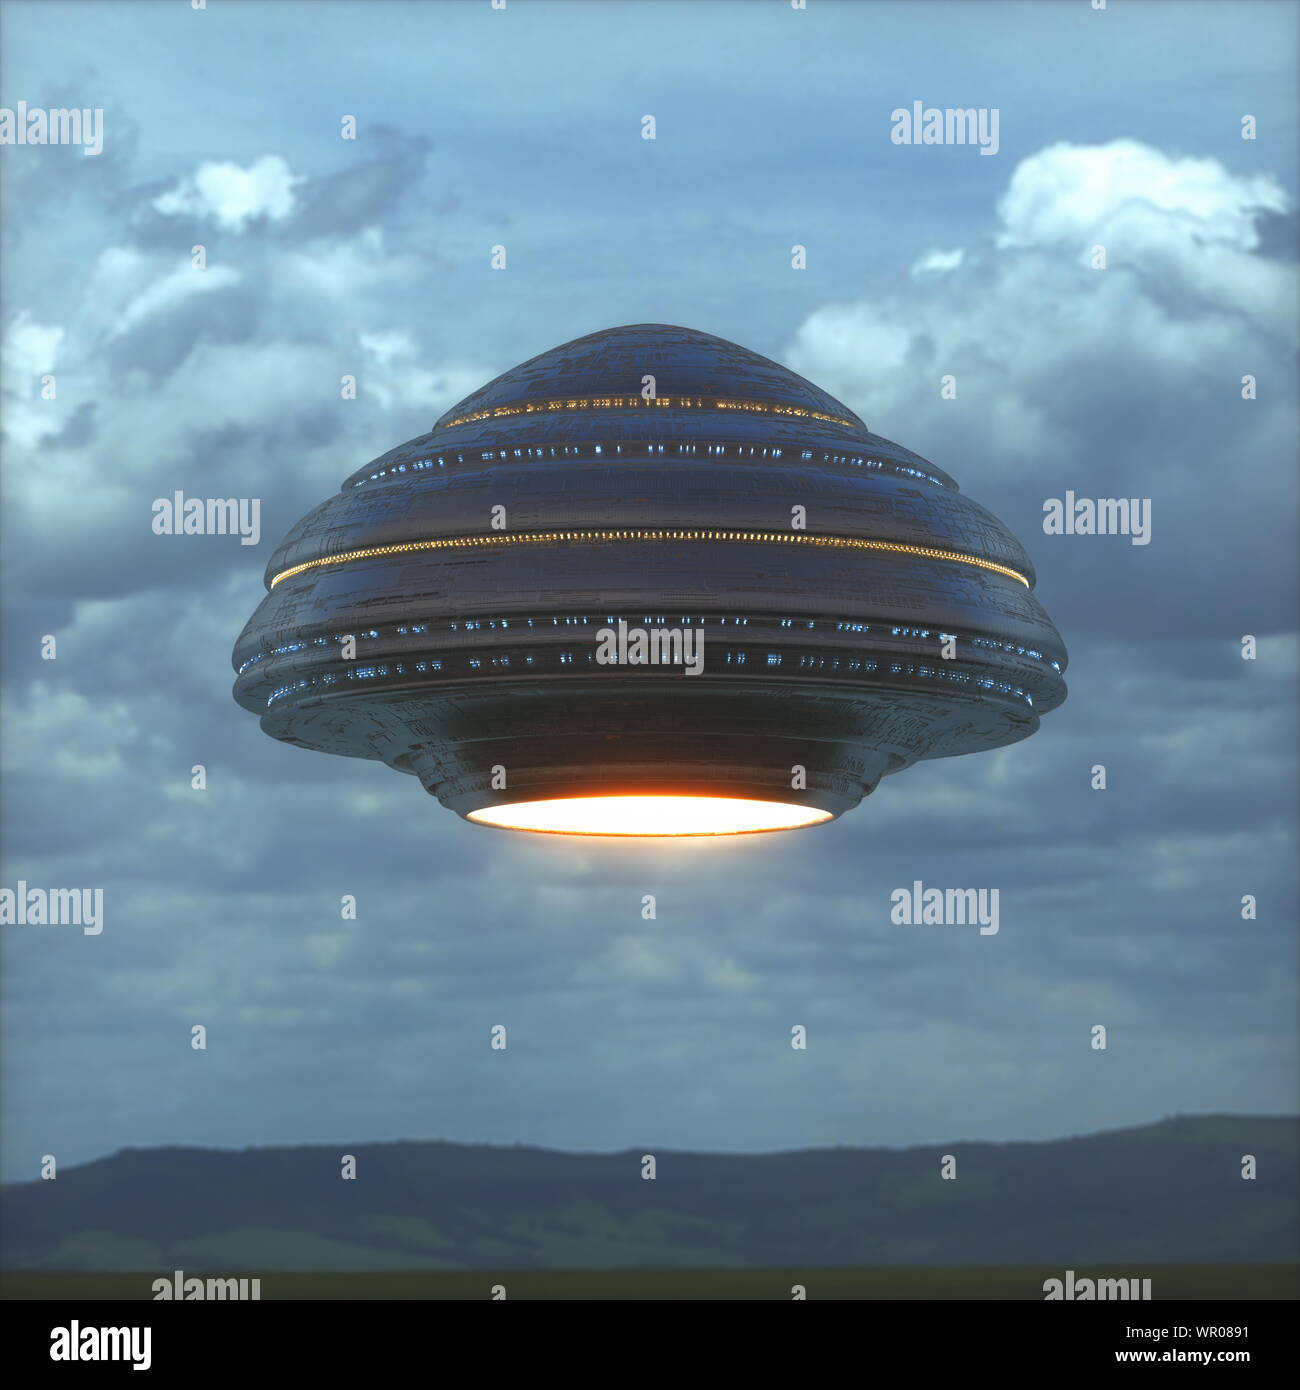 Unbekanntes Flugobjekt - UFO. Science Fiction Bild Konzept der Ufologie und das Leben des Planeten Erde. 3D-Darstellung. Stockfoto